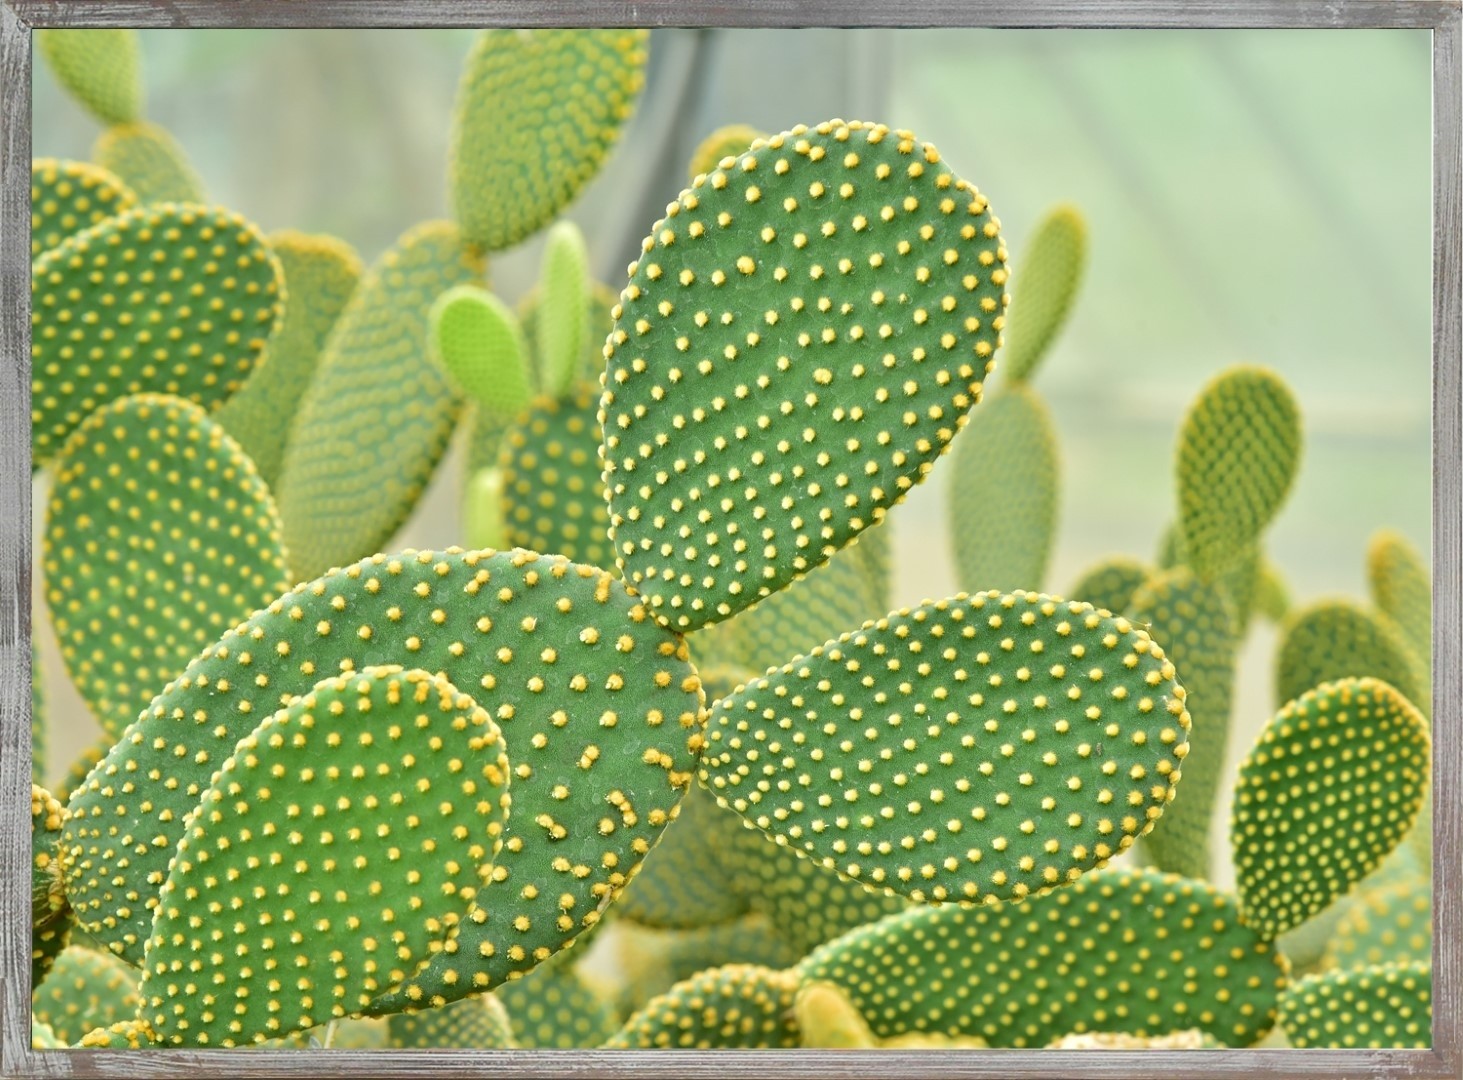 Buitencanvas cactus in frame 58x78cm